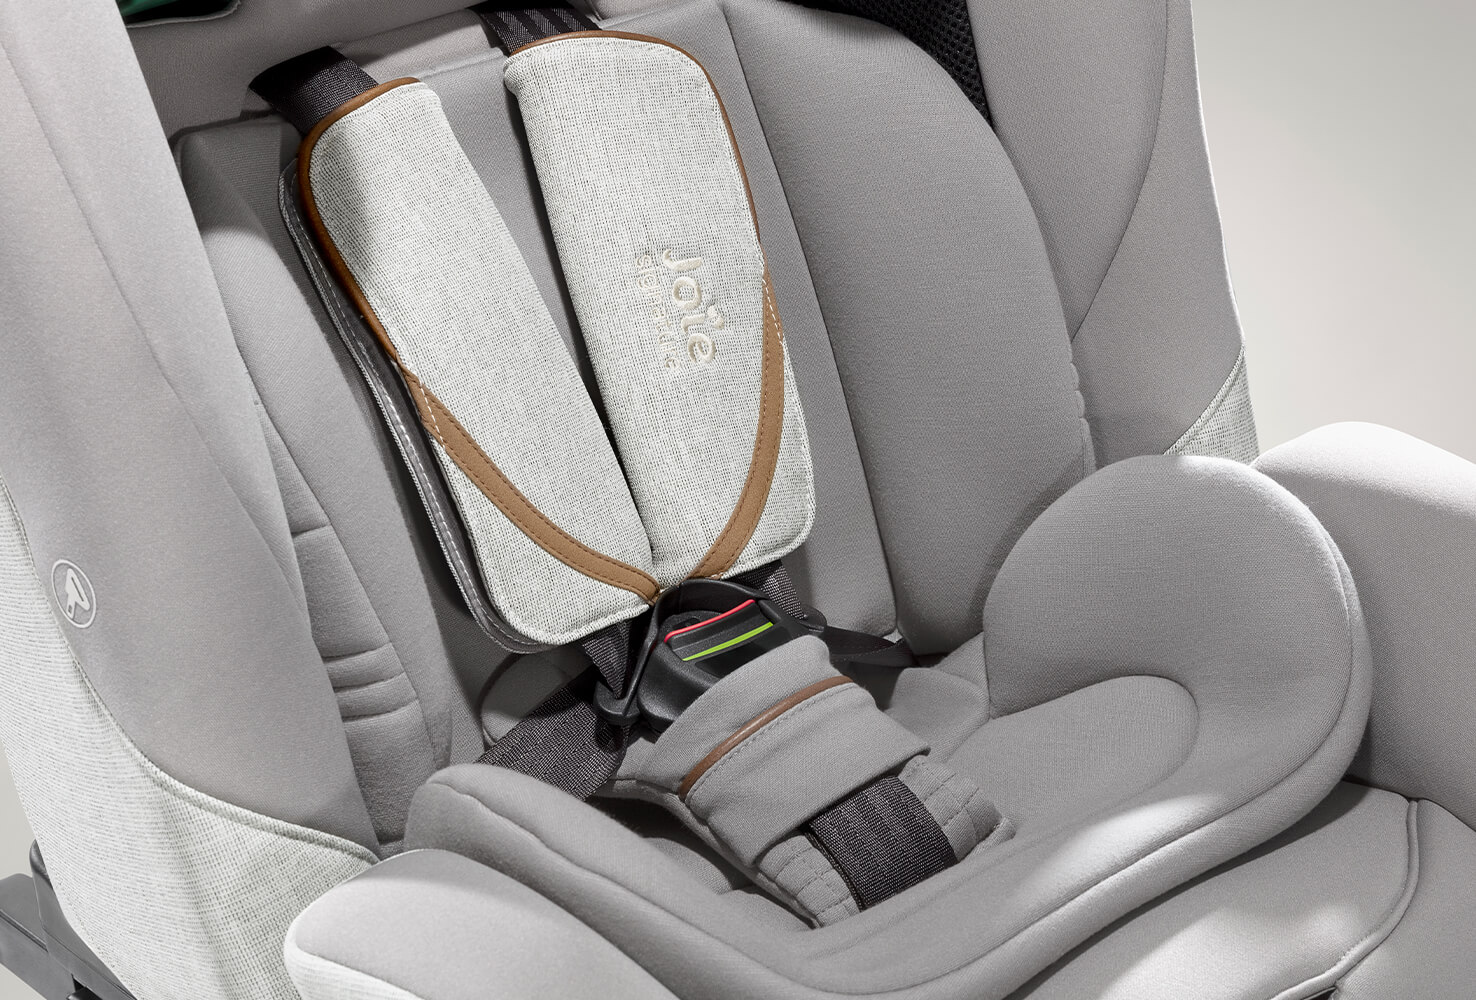 Closeup on a gray Joie I-Plenti car seat harness.